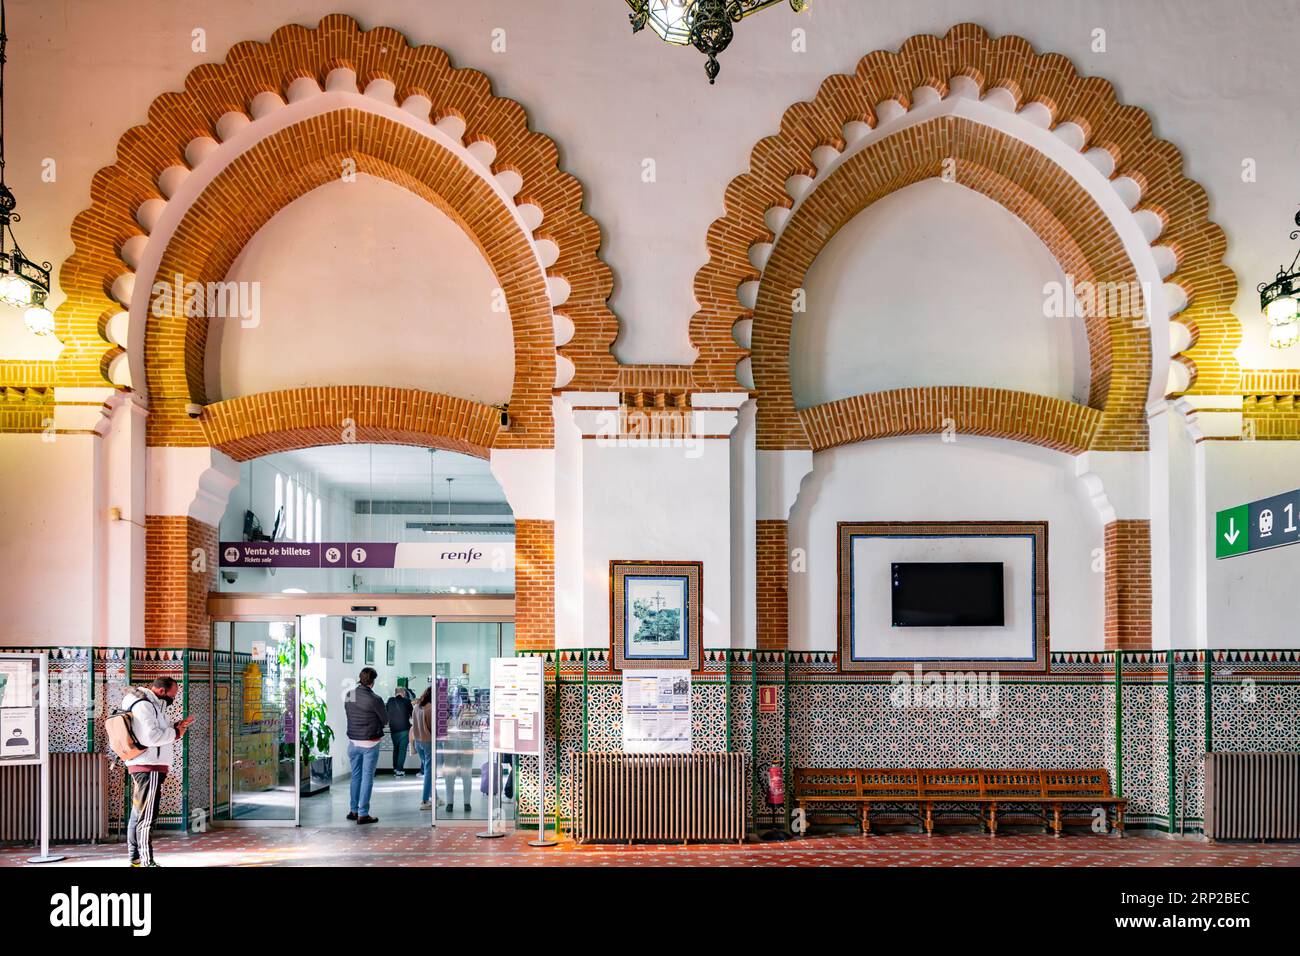 Toledo, Spagna - 17 febbraio 2022: Interno della stazione ferroviaria di Toledo con vetrate colorate e decorazioni in piastrelle islamiche. Progettato da Narciso Claveria y de Foto Stock